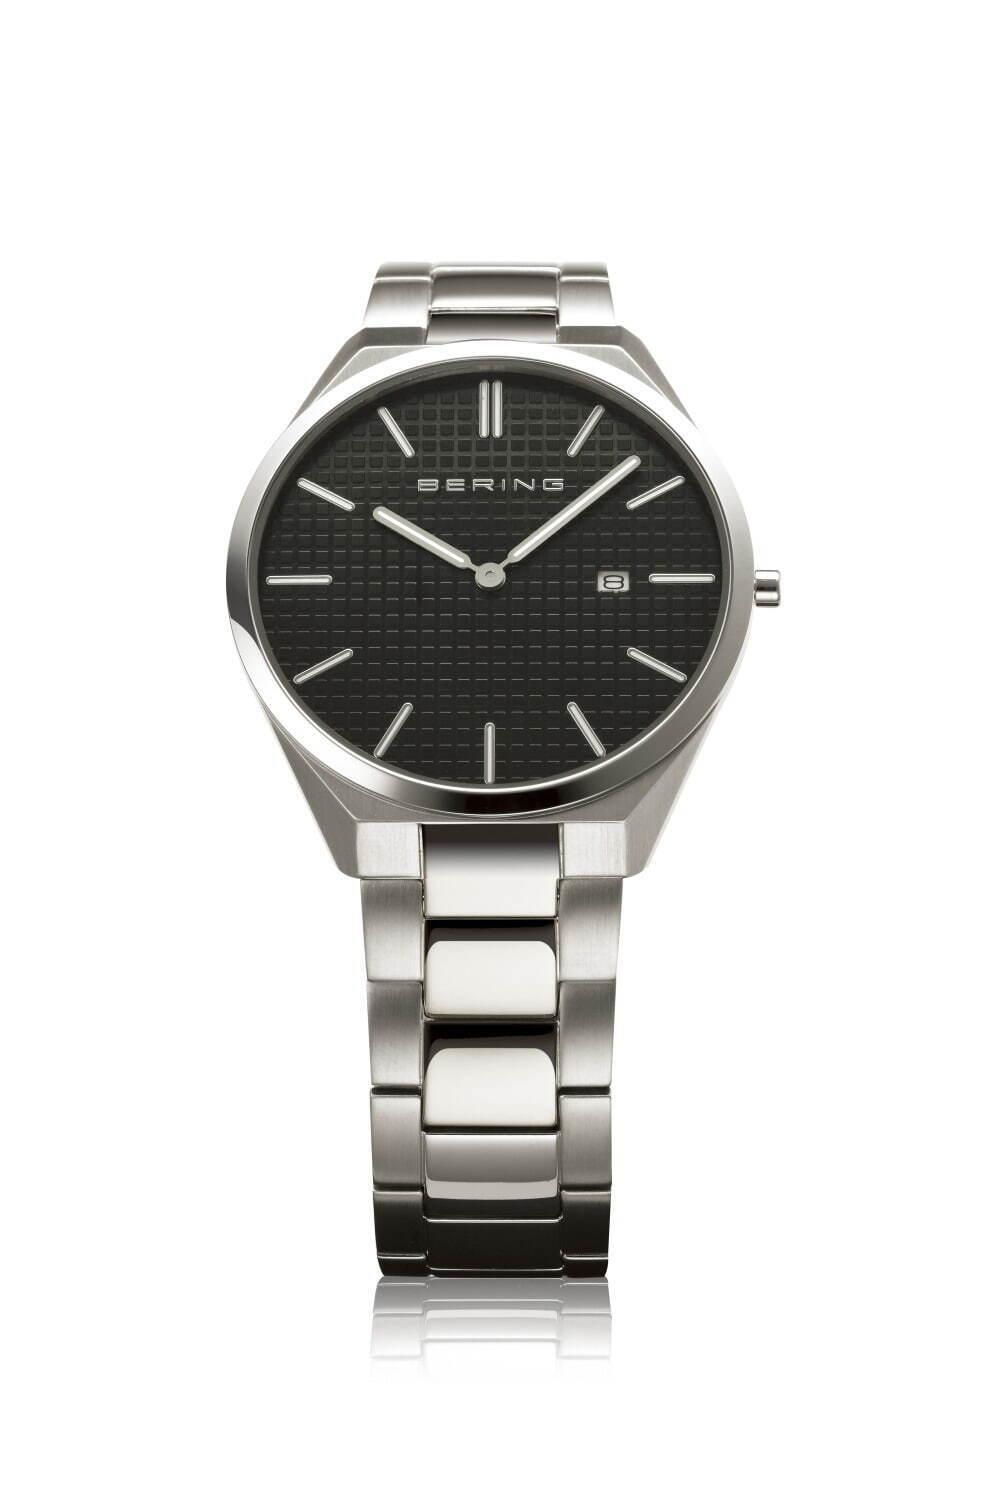 ベーリングの腕時計「ウルトラスリム」新作、厚さ5.5mmケース×メタルバンド コピー